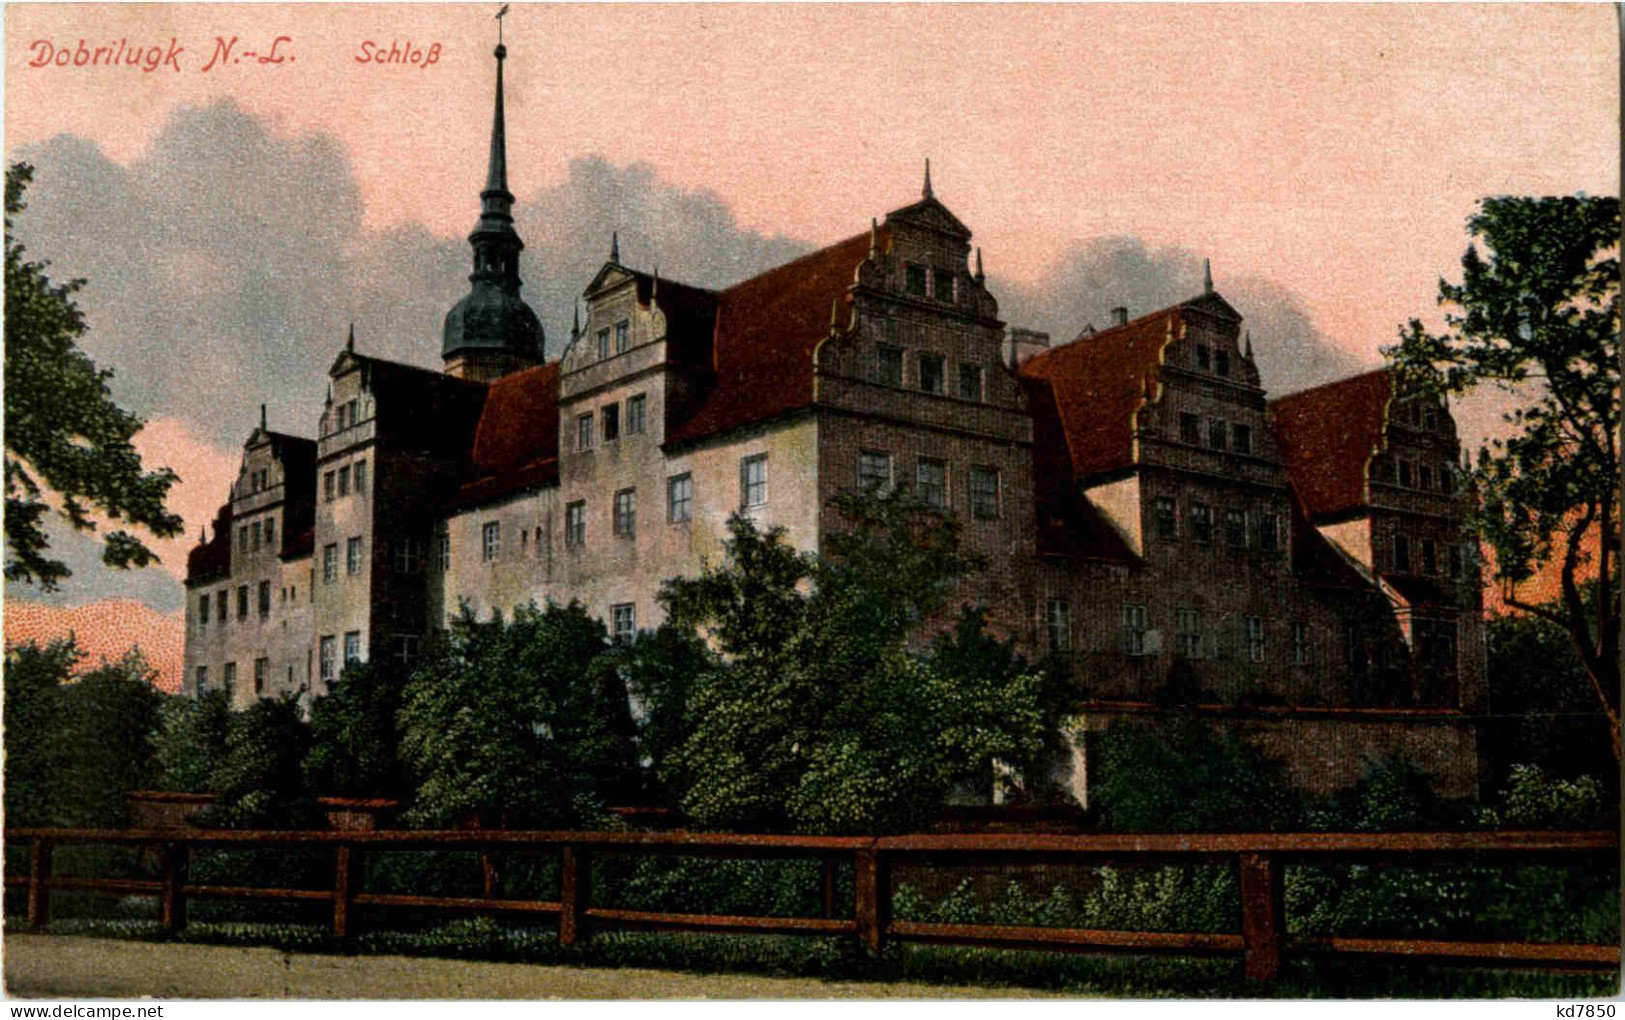 Dorbrilugk - Schloss - Doberlug-Kirchhain